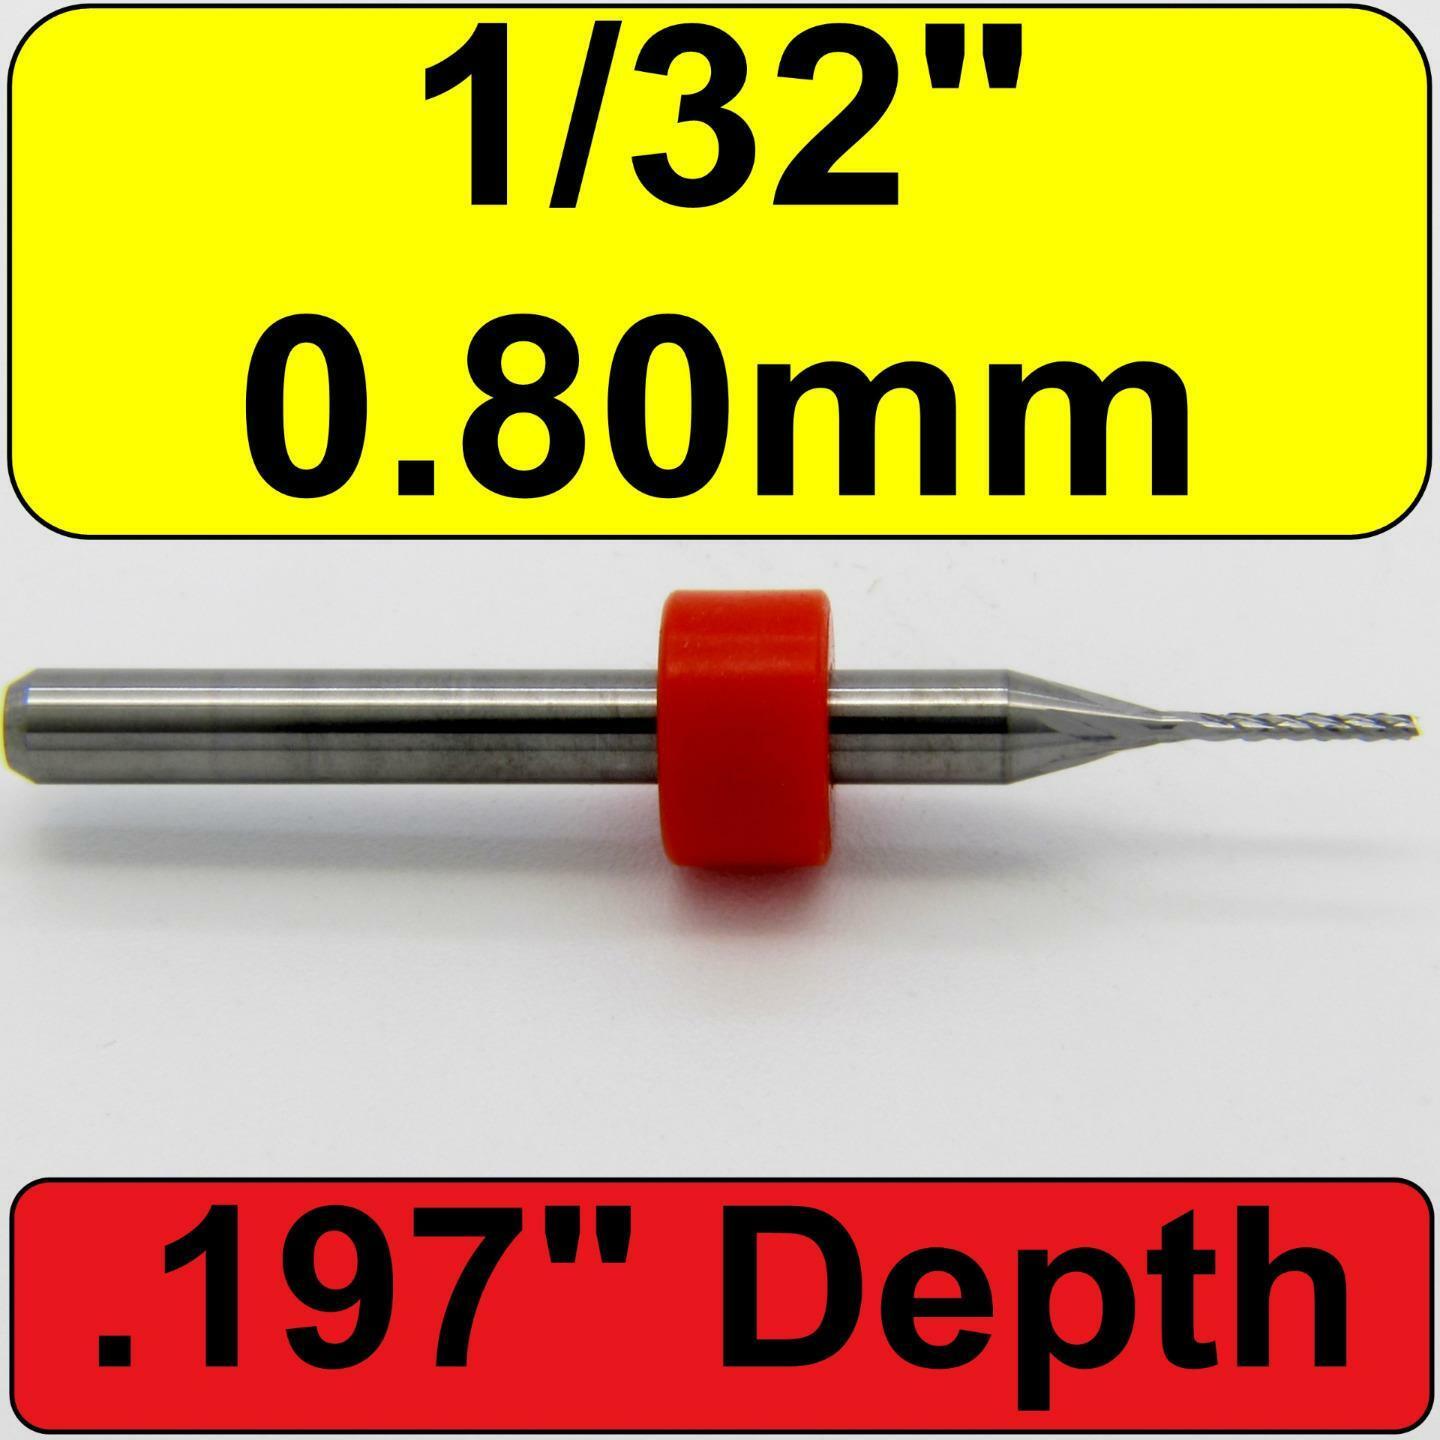 1/32" 0.80mm Diamond Flutes Carbide Router Bit - Fishtail Tip - .197" Loc - R105